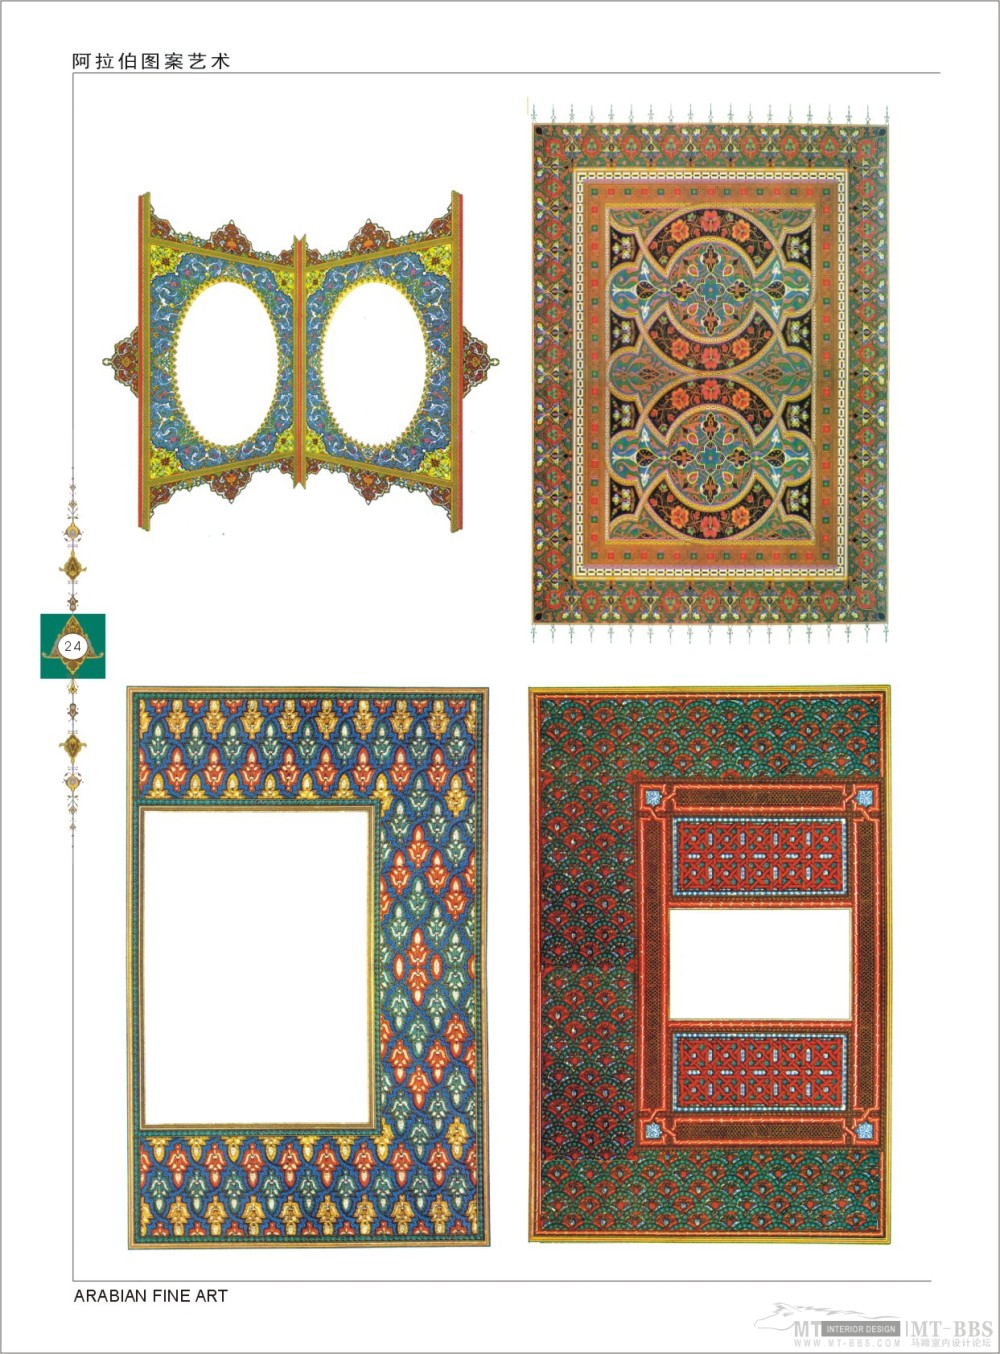 《阿拉伯图案艺术》1--24页-图案纹样.jpg